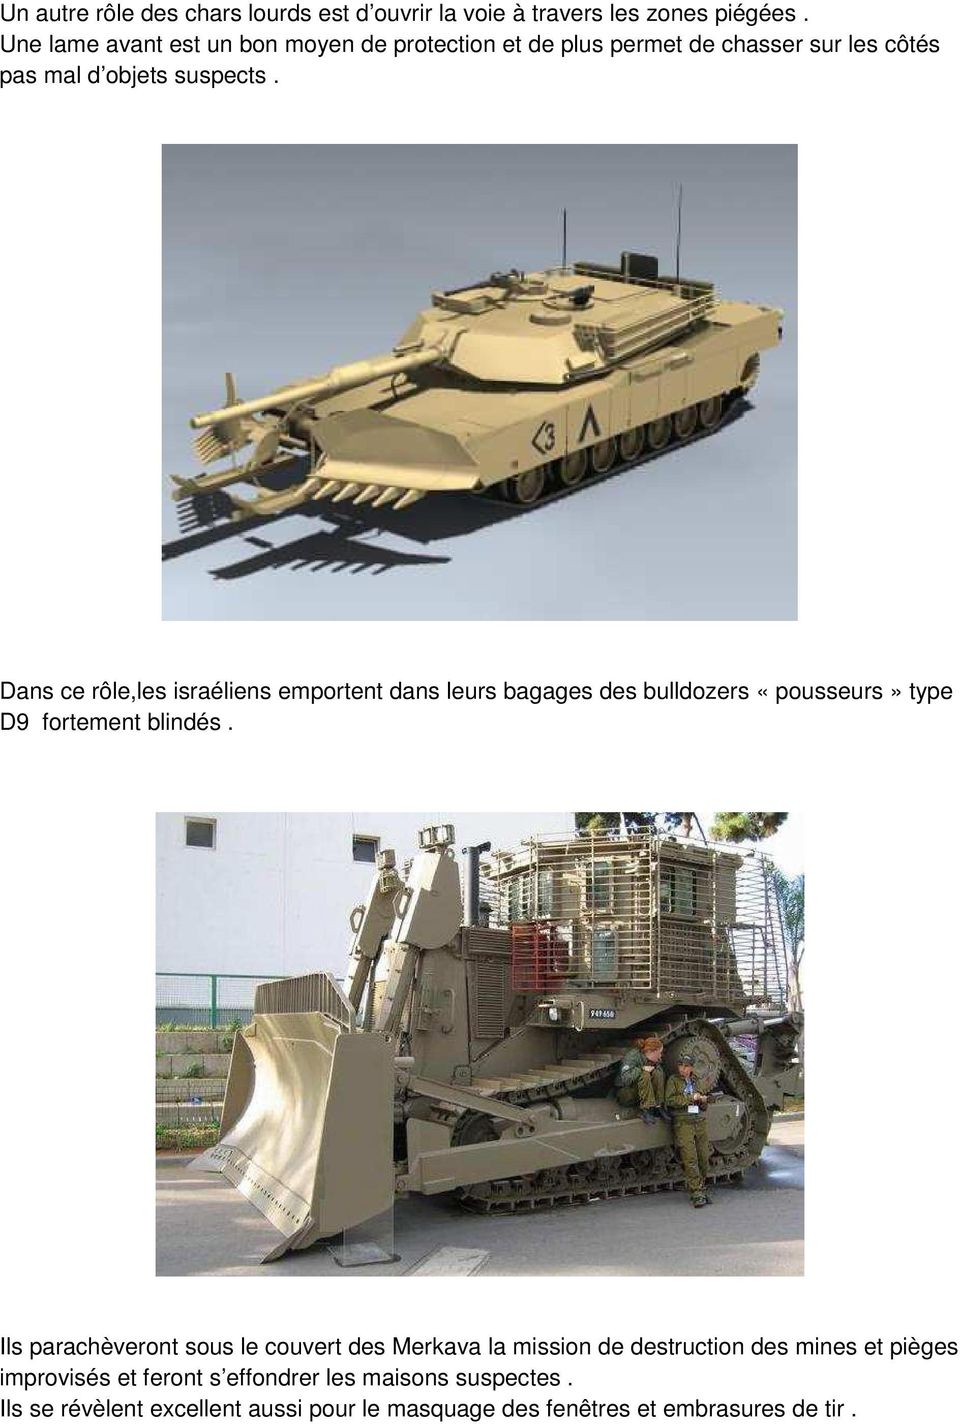 Dans ce rôle,les israéliens emportent dans leurs bagages des bulldozers «pousseurs» type D9 fortement blindés.